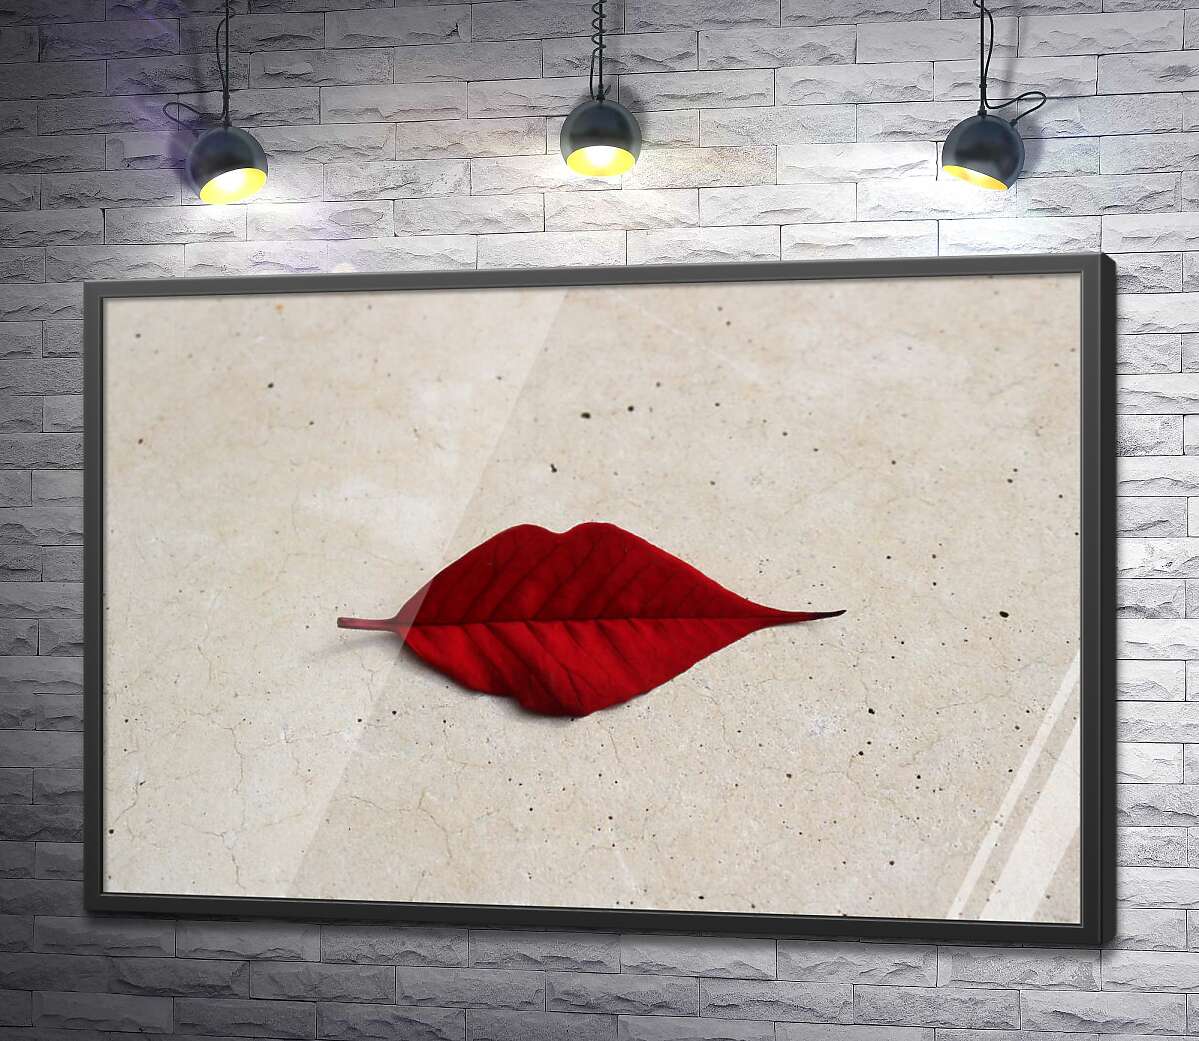 постер Червоний листочок у формі губок лежить на мармуровій підлозі